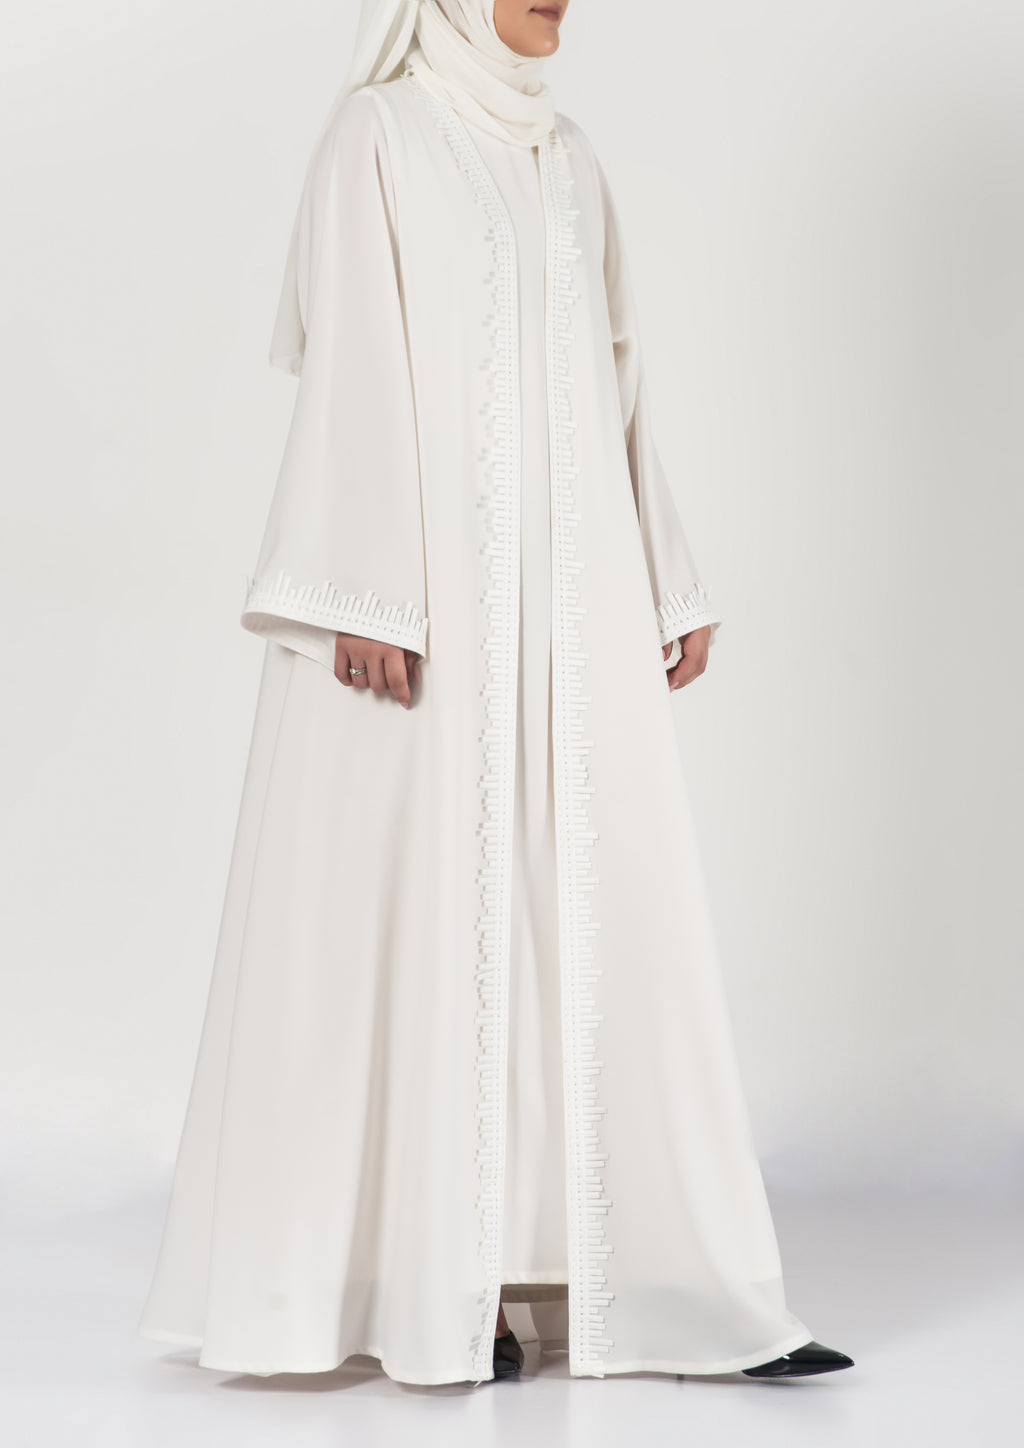 white elegant abaya - thowby - beautiful dubai abayas